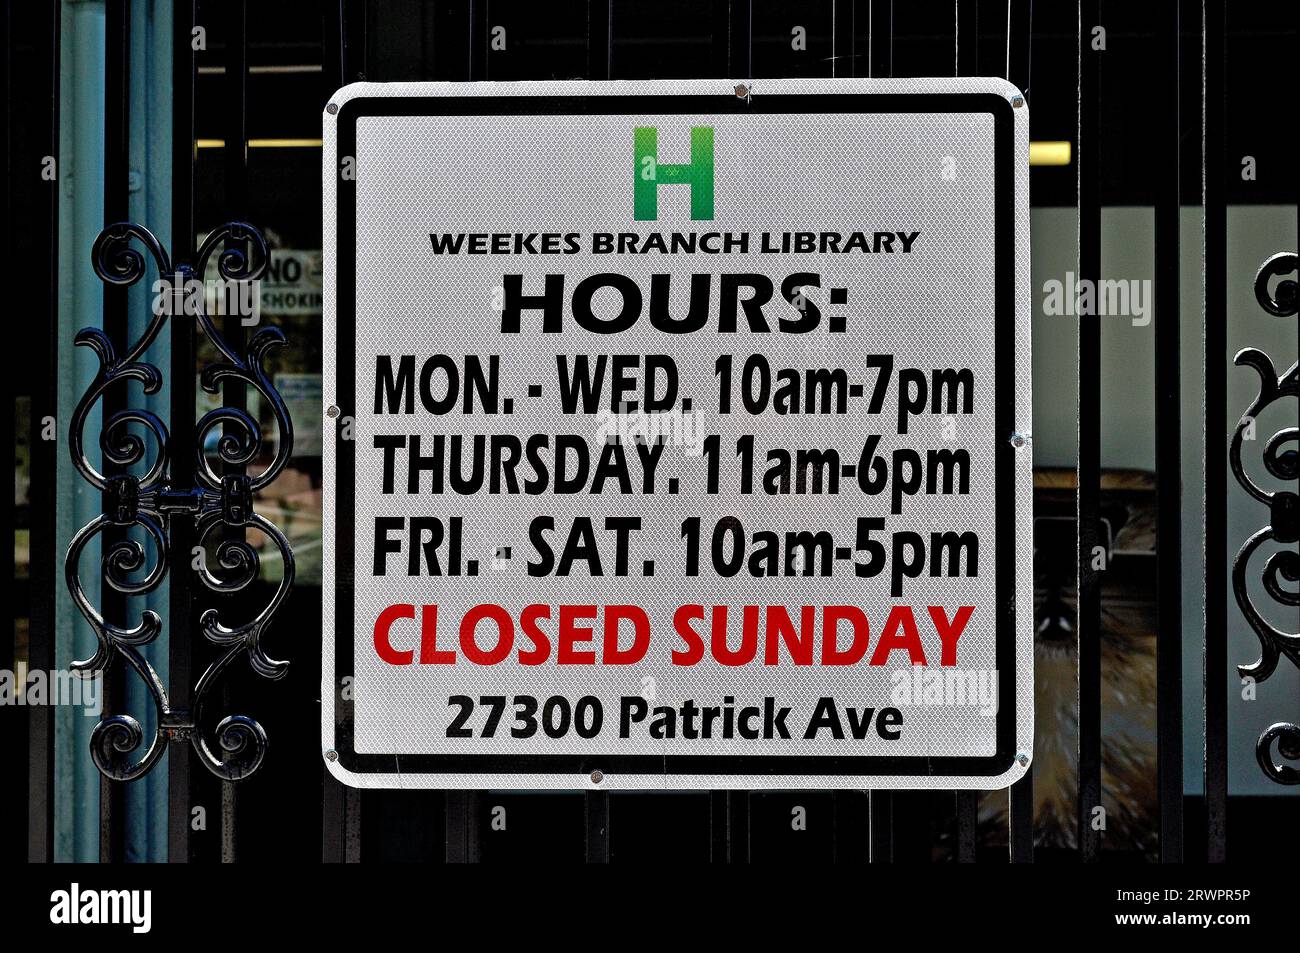 El cartel de horas de la sucursal de la biblioteca Weekes en Hayward California Foto de stock